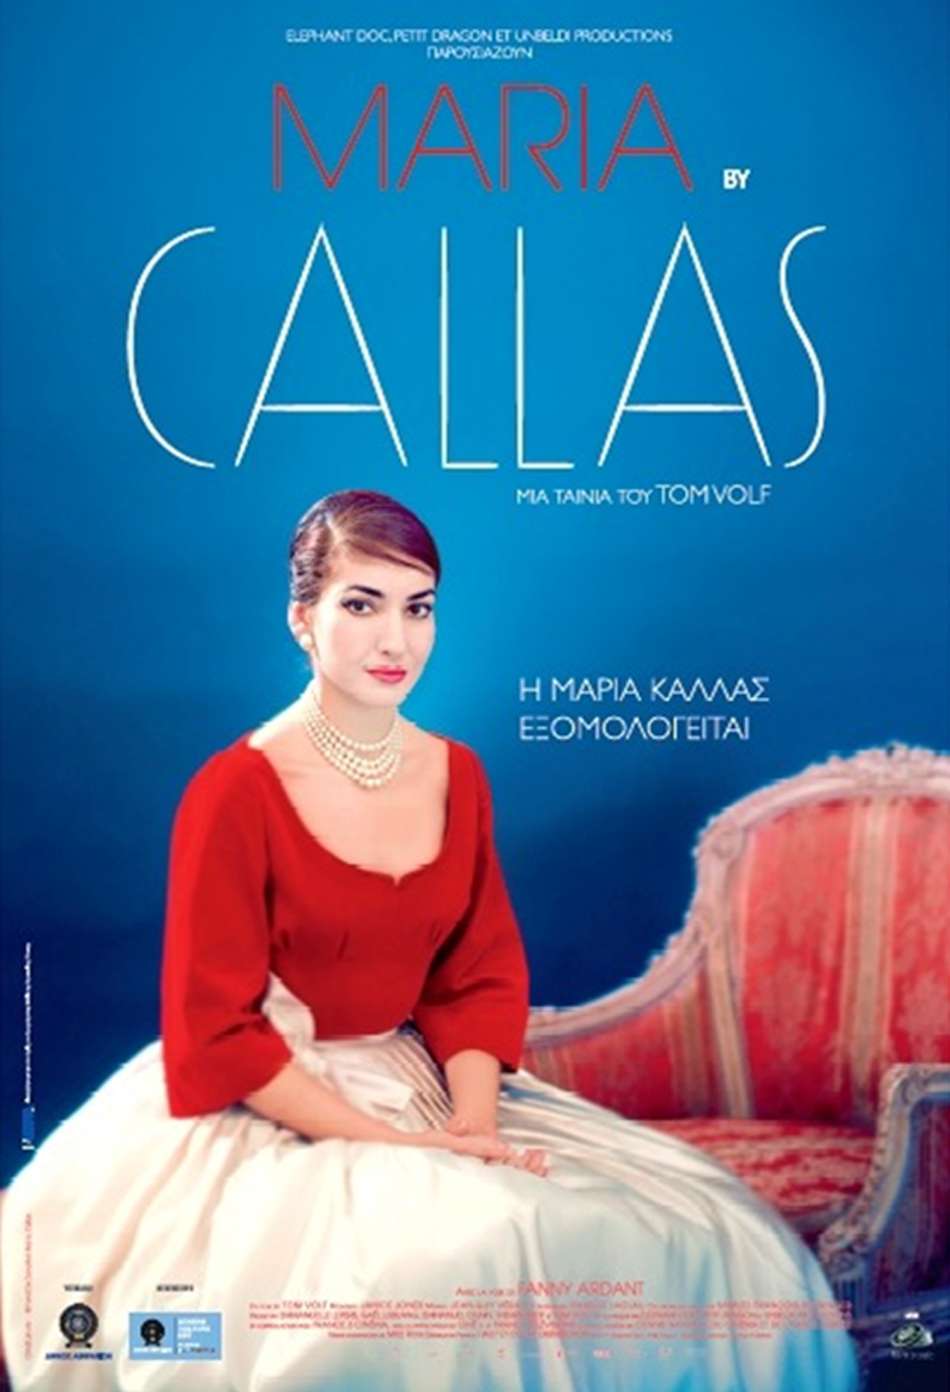 Η Mαρία Κάλλας εξομολογείται (Maria by Callas) Poster